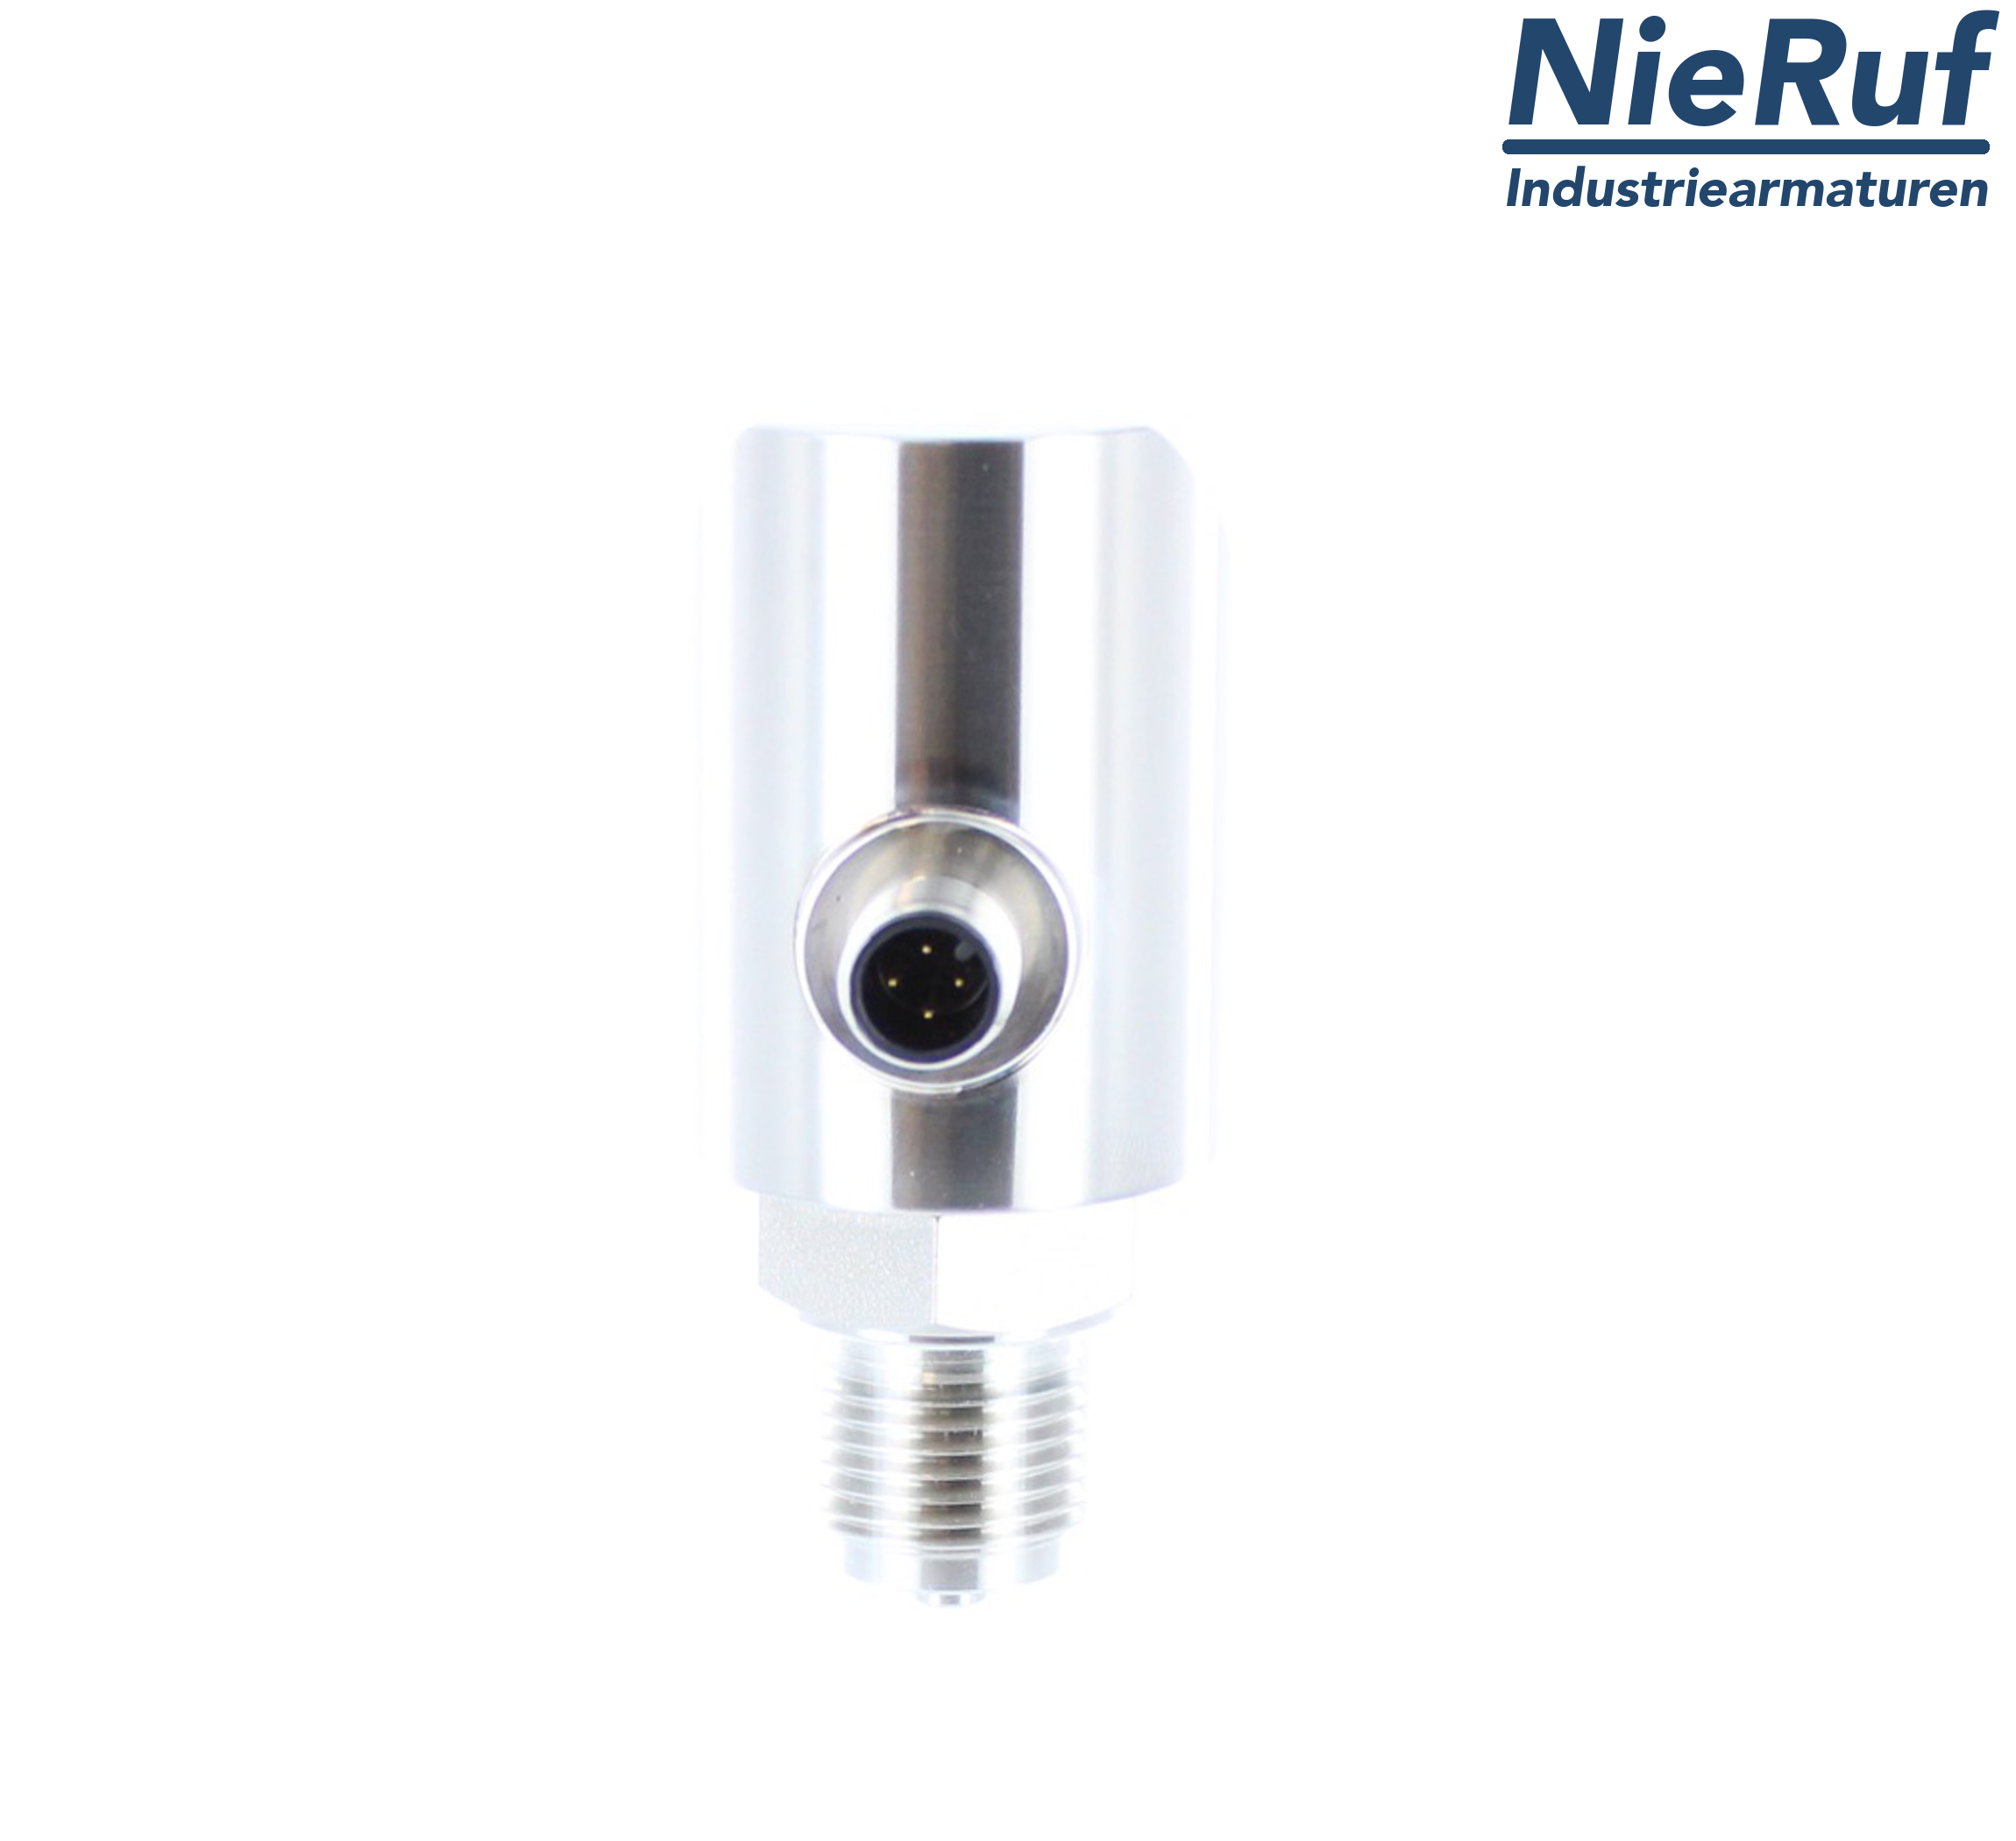 digital pressure sensor G 1/4" B 5-wire: 2xPNP, 1x4 - 20mA FPM 0,0 - 10,0 bar